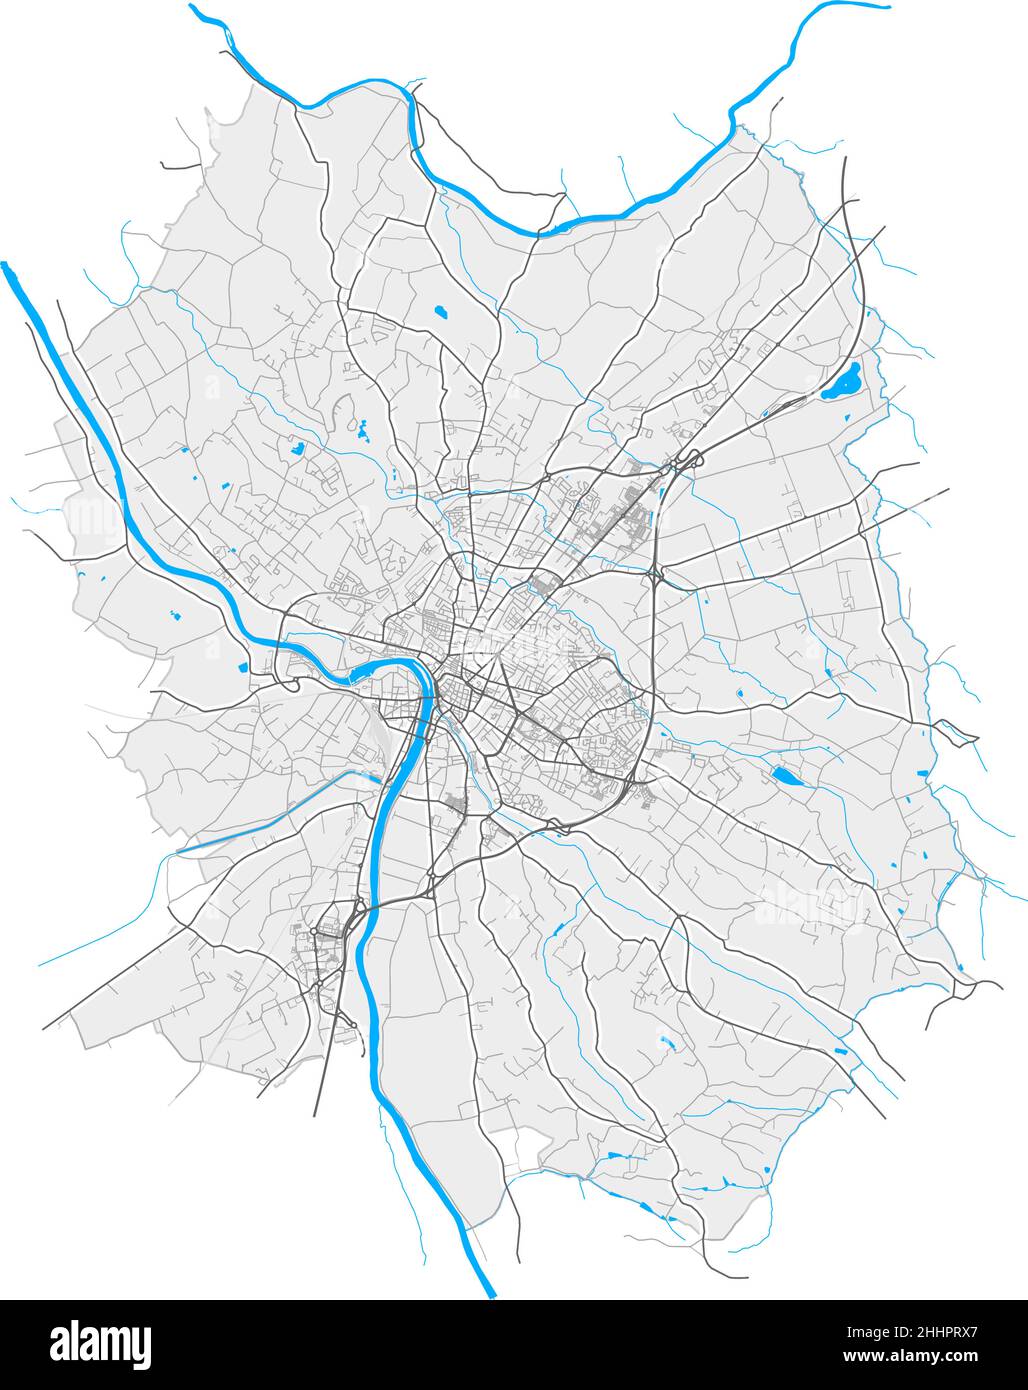 Montauban, Tarn-et-Garonne, Frankreich hochauflösende Vektorkarte mit Stadtgrenzen und bearbeitbaren Pfaden. Weiße Umrisse für Hauptstraßen. Viele detaillierte pa Stock Vektor